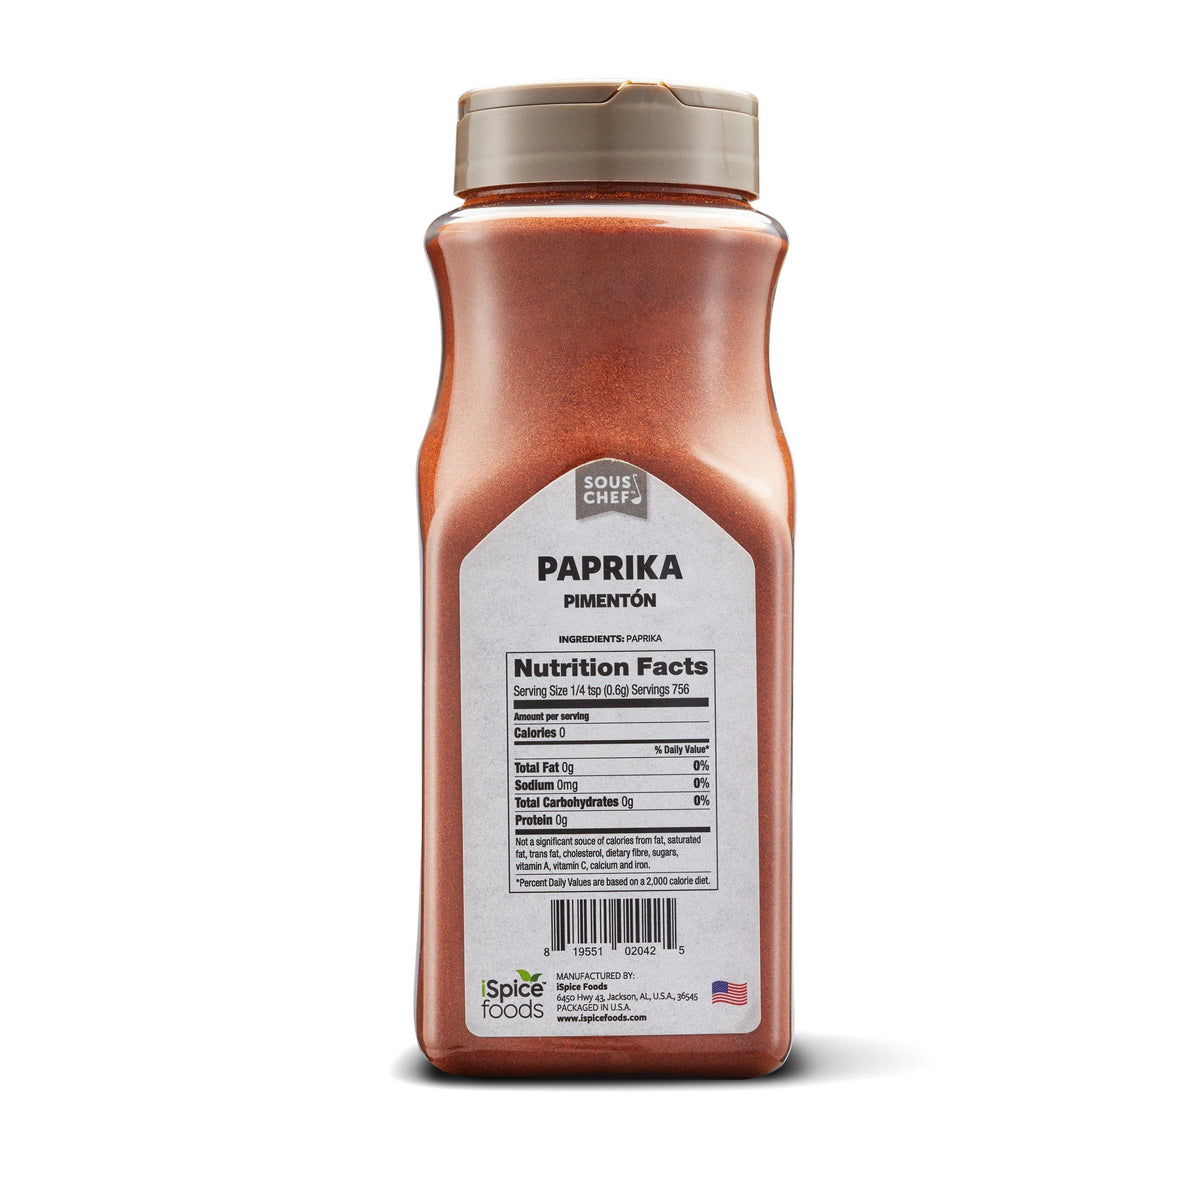 7 Surprising Health Benefits of Eating Paprika